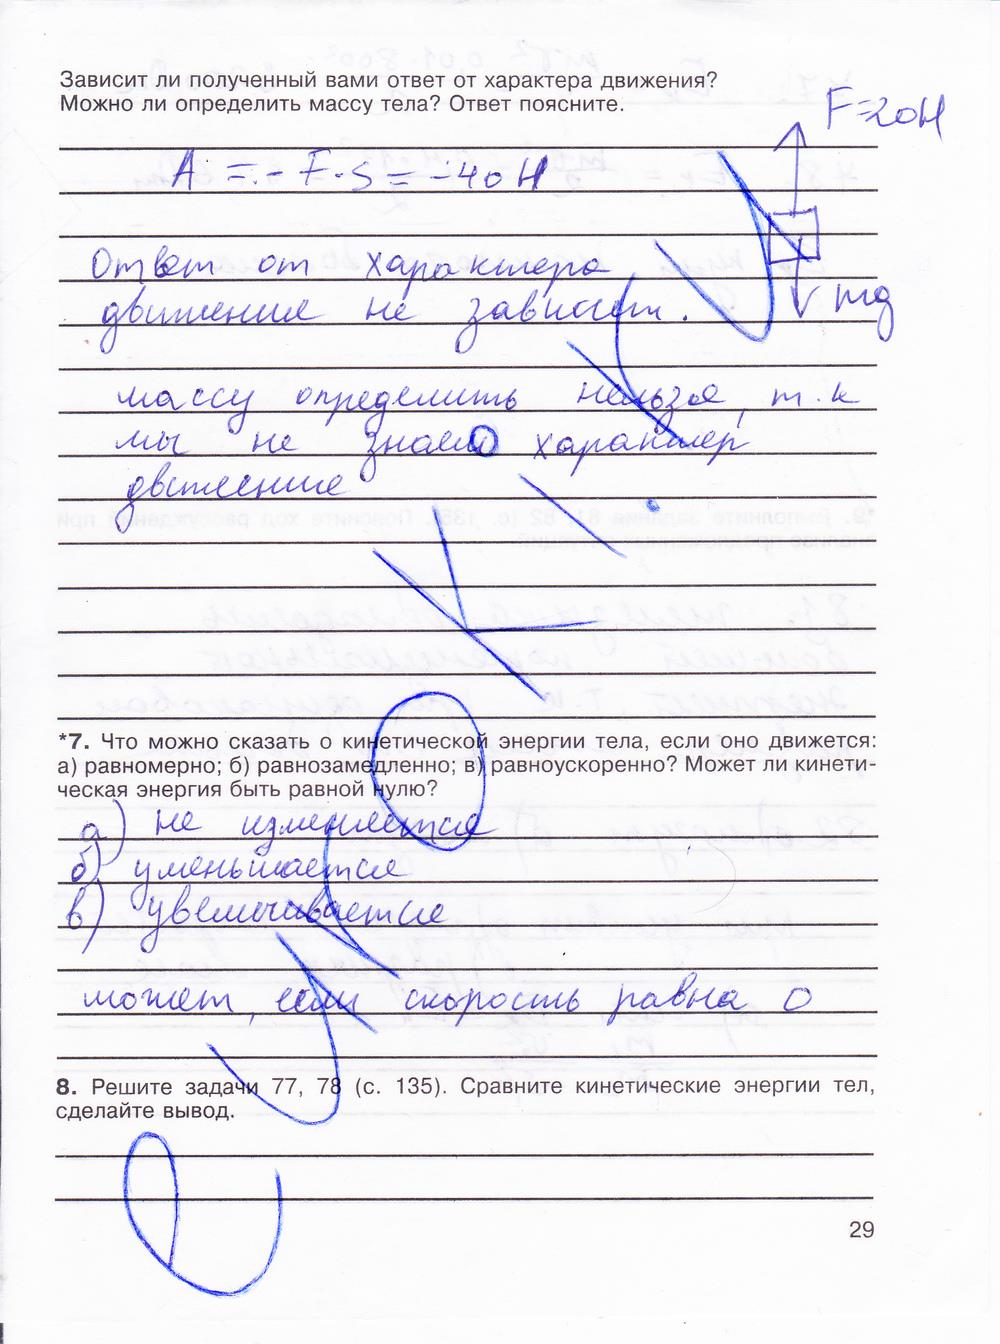 гдз 8 класс рабочая тетрадь страница 29 физика Мартынова, Иванова, Воронина